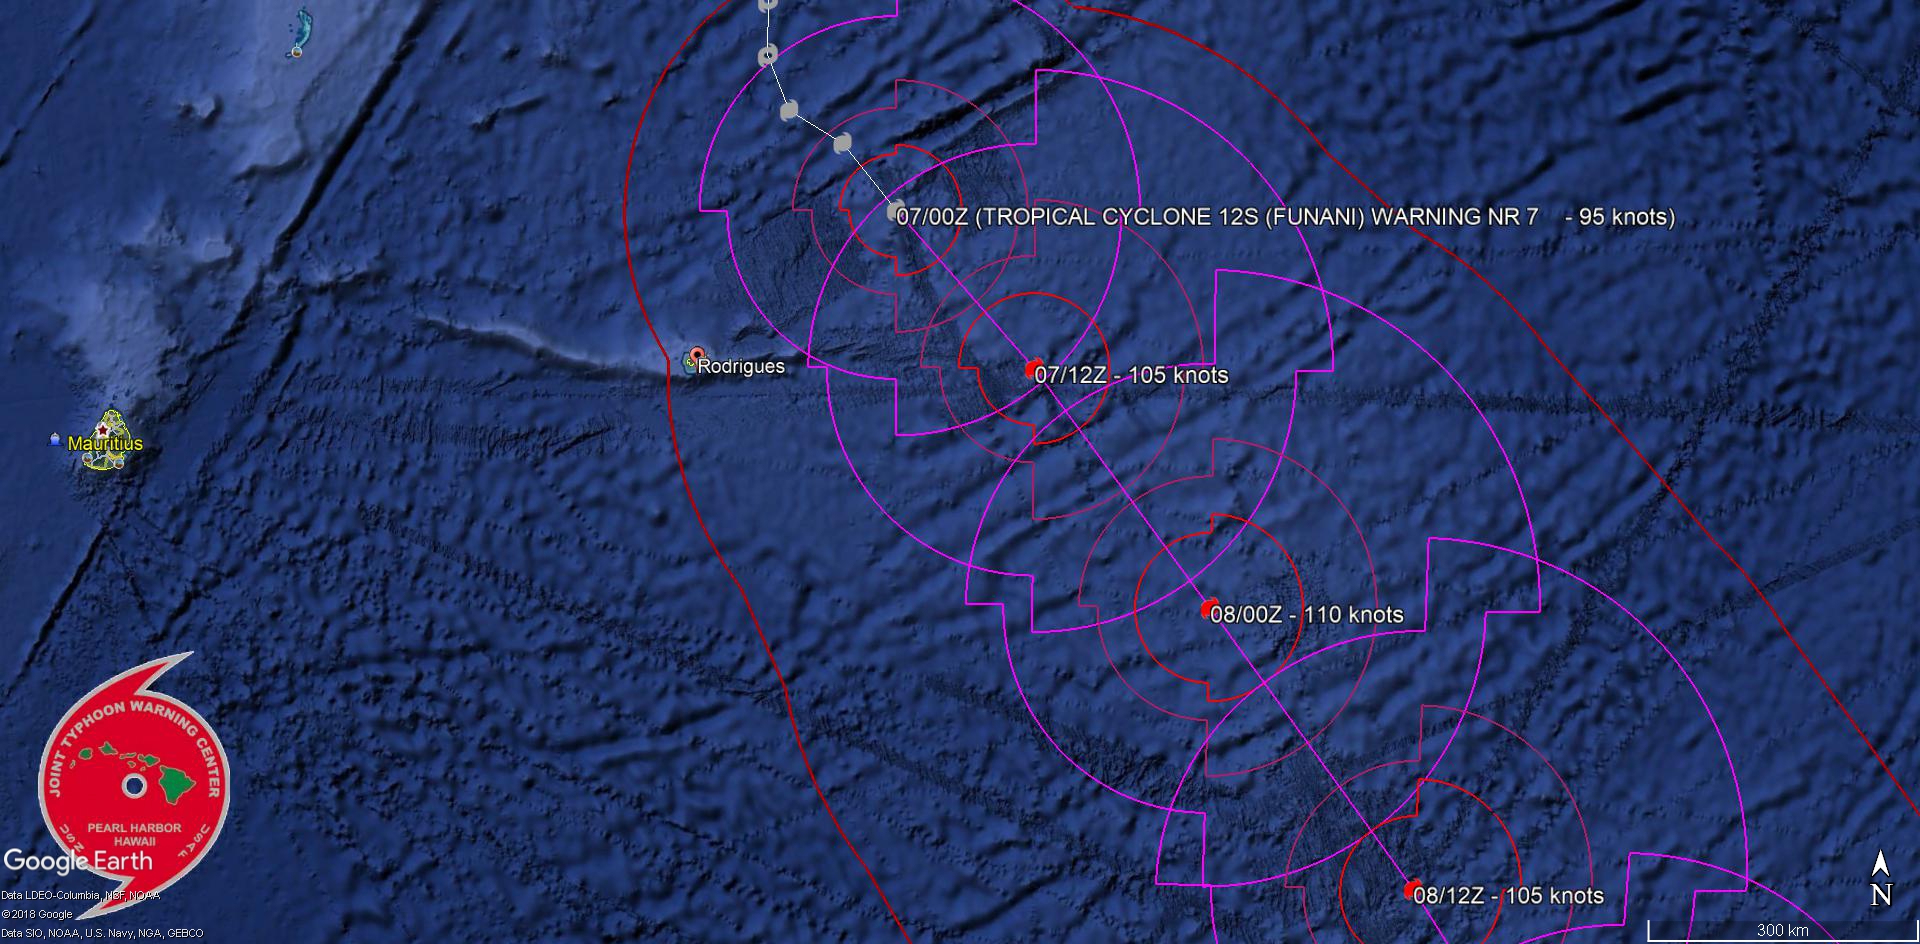 Prévisions du JTWC: le cyclone conitnue de s'intensifier mais est à son point le plus rapproché de Rodrigues sur la trajectoire actuelle.